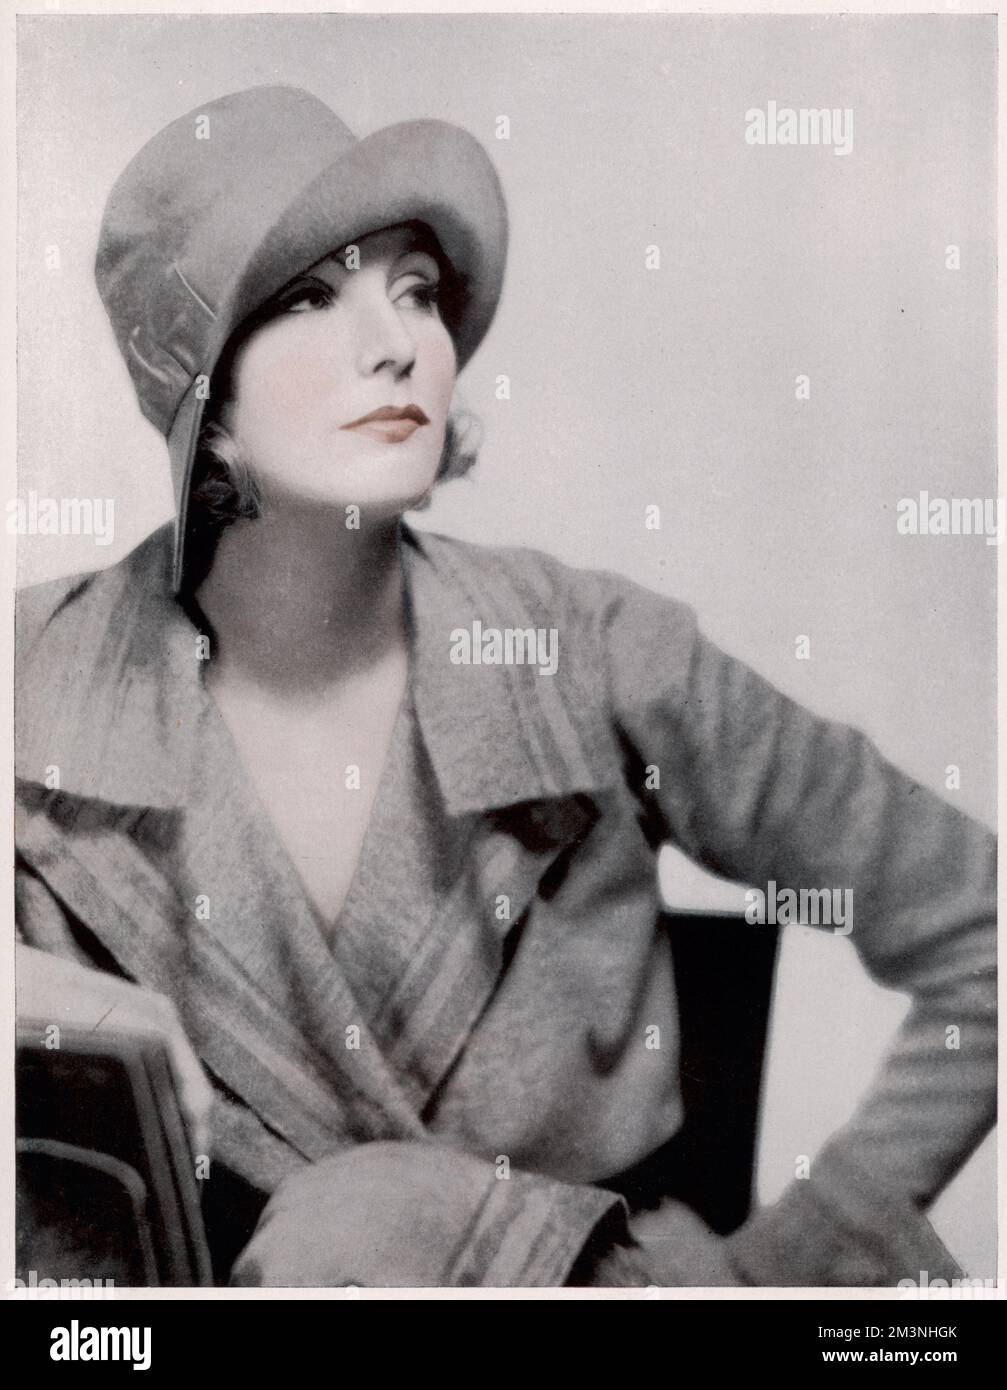 Ritratto di Greta Garbo (1905 - 1990). Greta Garbo è nata a Stoccolma ed è stata 'invased' mentre studiava alla scuola drammatica del Teatro reale dal direttore svedese Mauritz Stiller. Il suo primo film di Hollywood fu 'The Temptress' 1926. Tra gli altri successi si annoverano la "Regina Christie" (1930), la "Anna Karenin" (1935) e la "Ninotchka" (1939). Si è ritirata dai film nel 1941, dopo aver ricevuto recensioni negative per "Two-Faced Woman". Trascorse il resto della sua vita vivendo come reclusa a New York. Data: 1931 Foto Stock